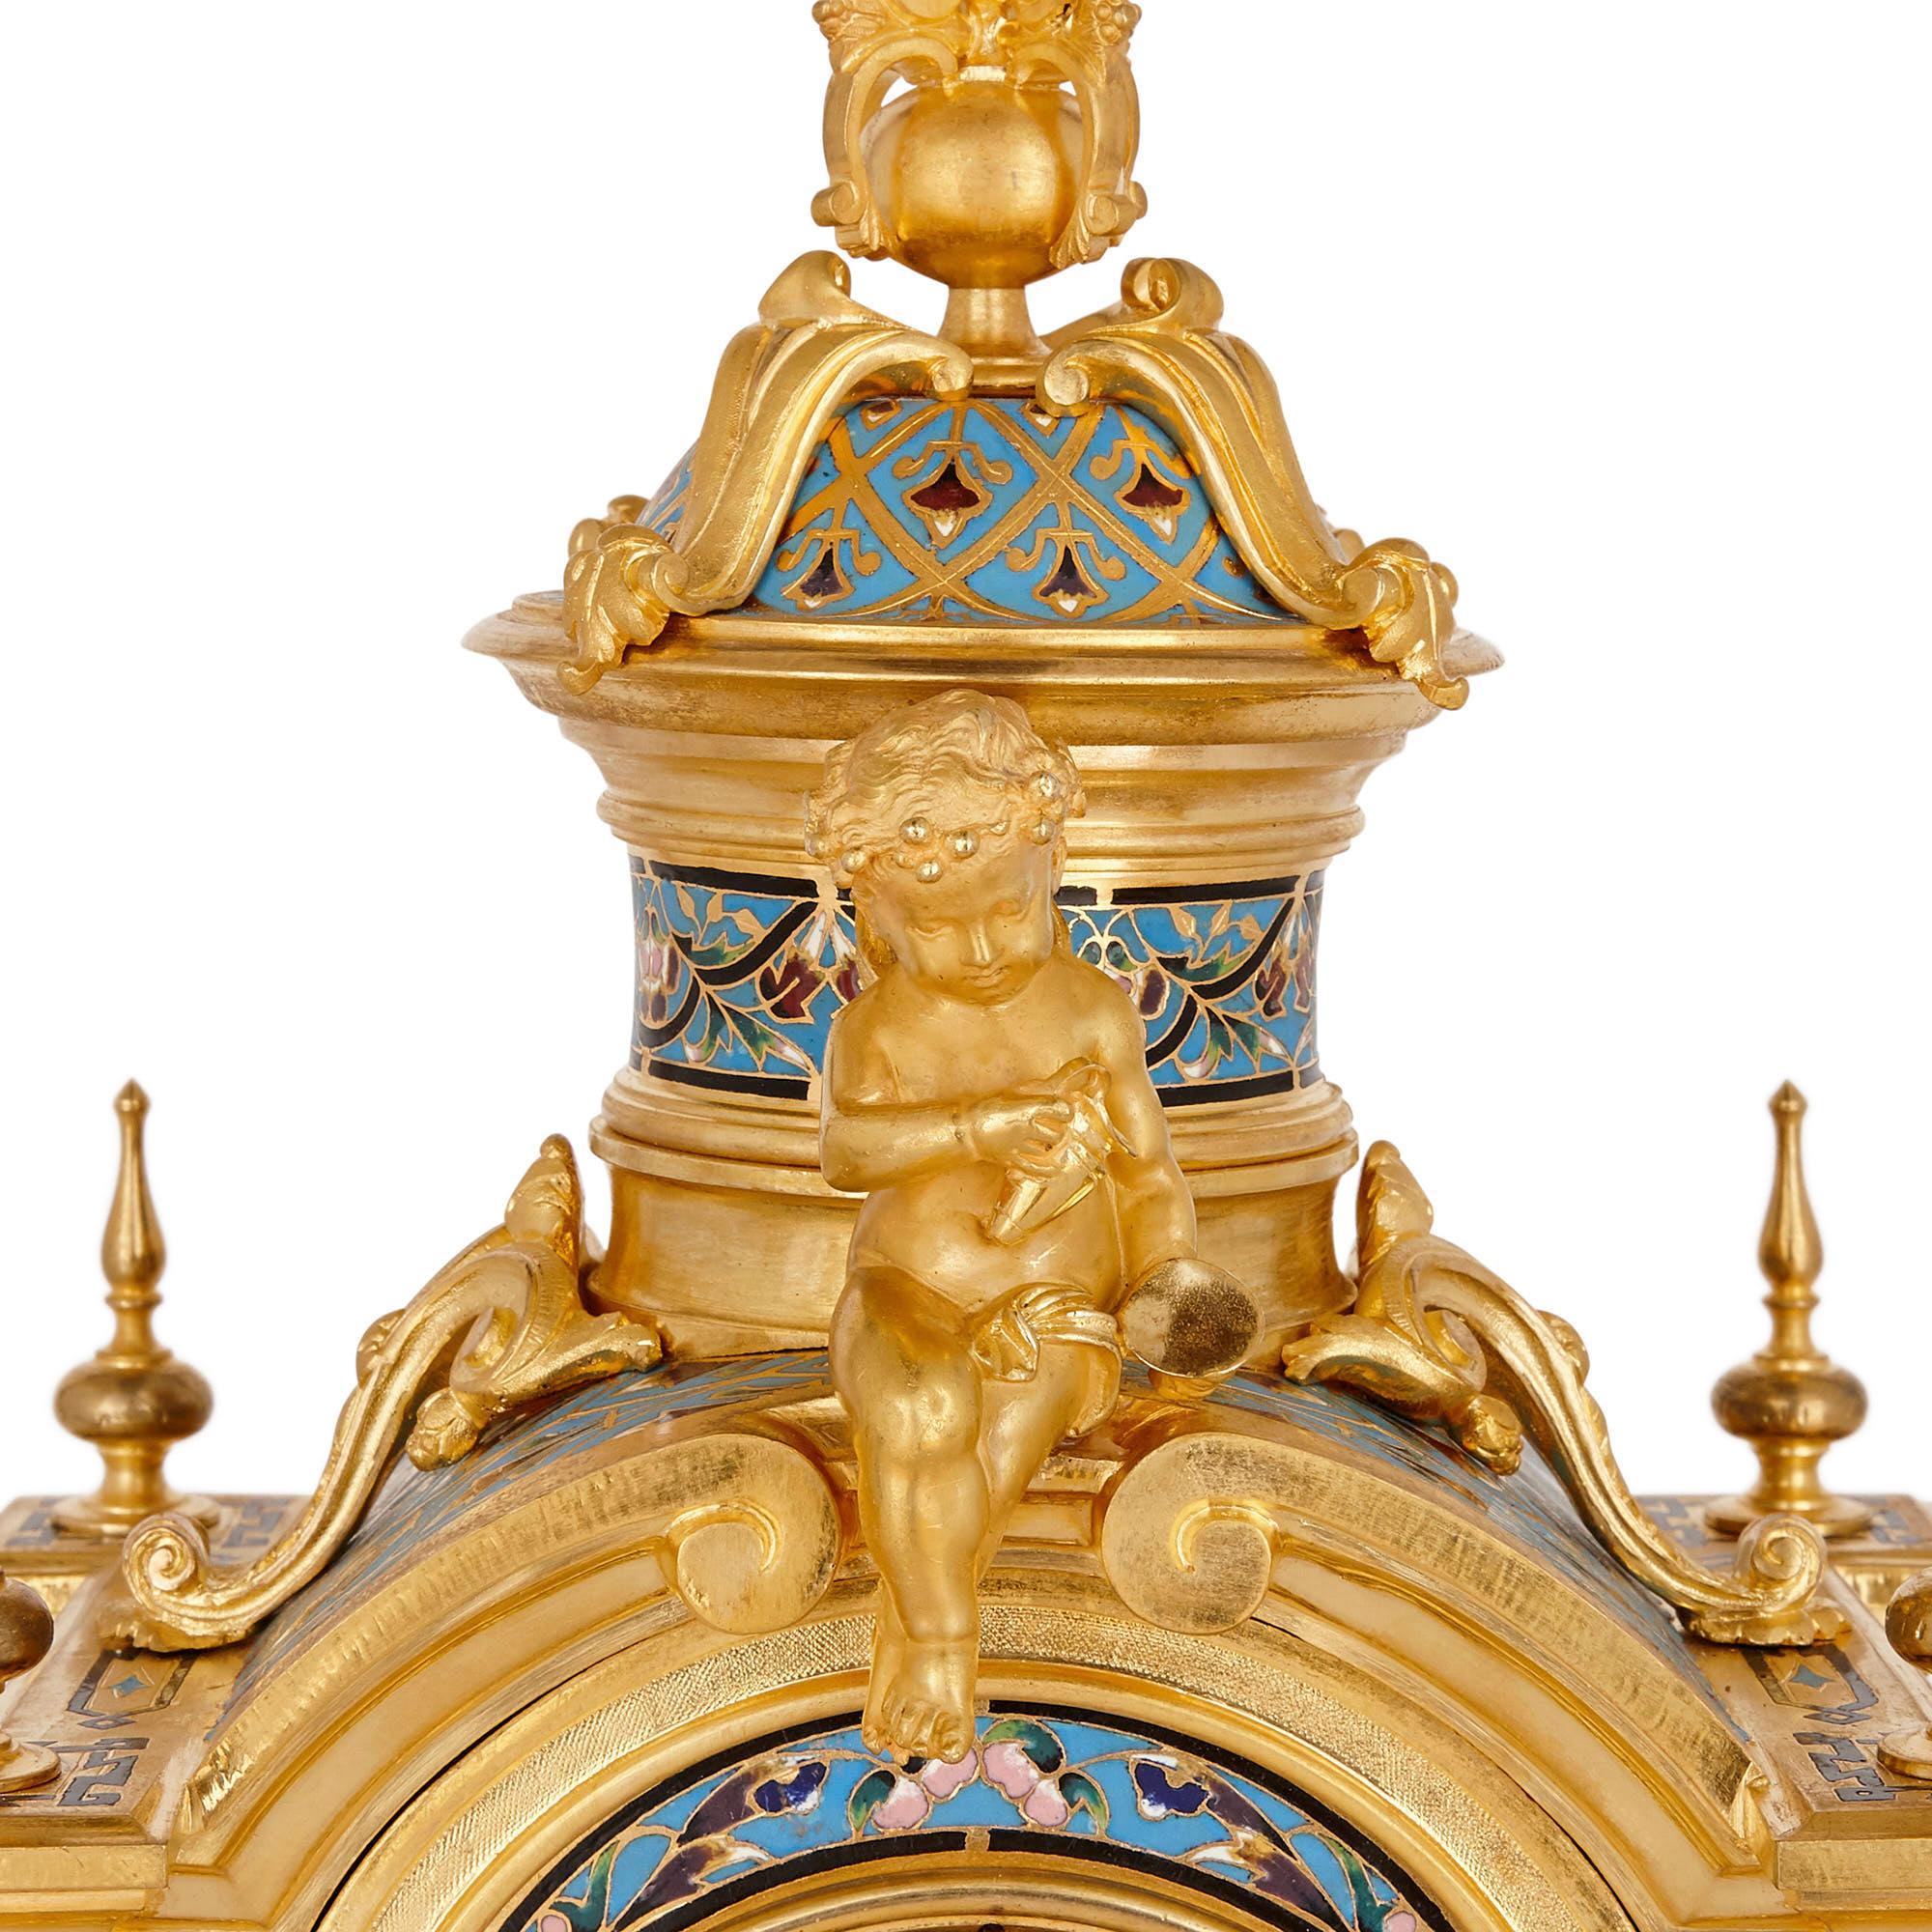 Champlevé Renaissance Style Gilt Bronze and Enamel Mantel Clock For Sale